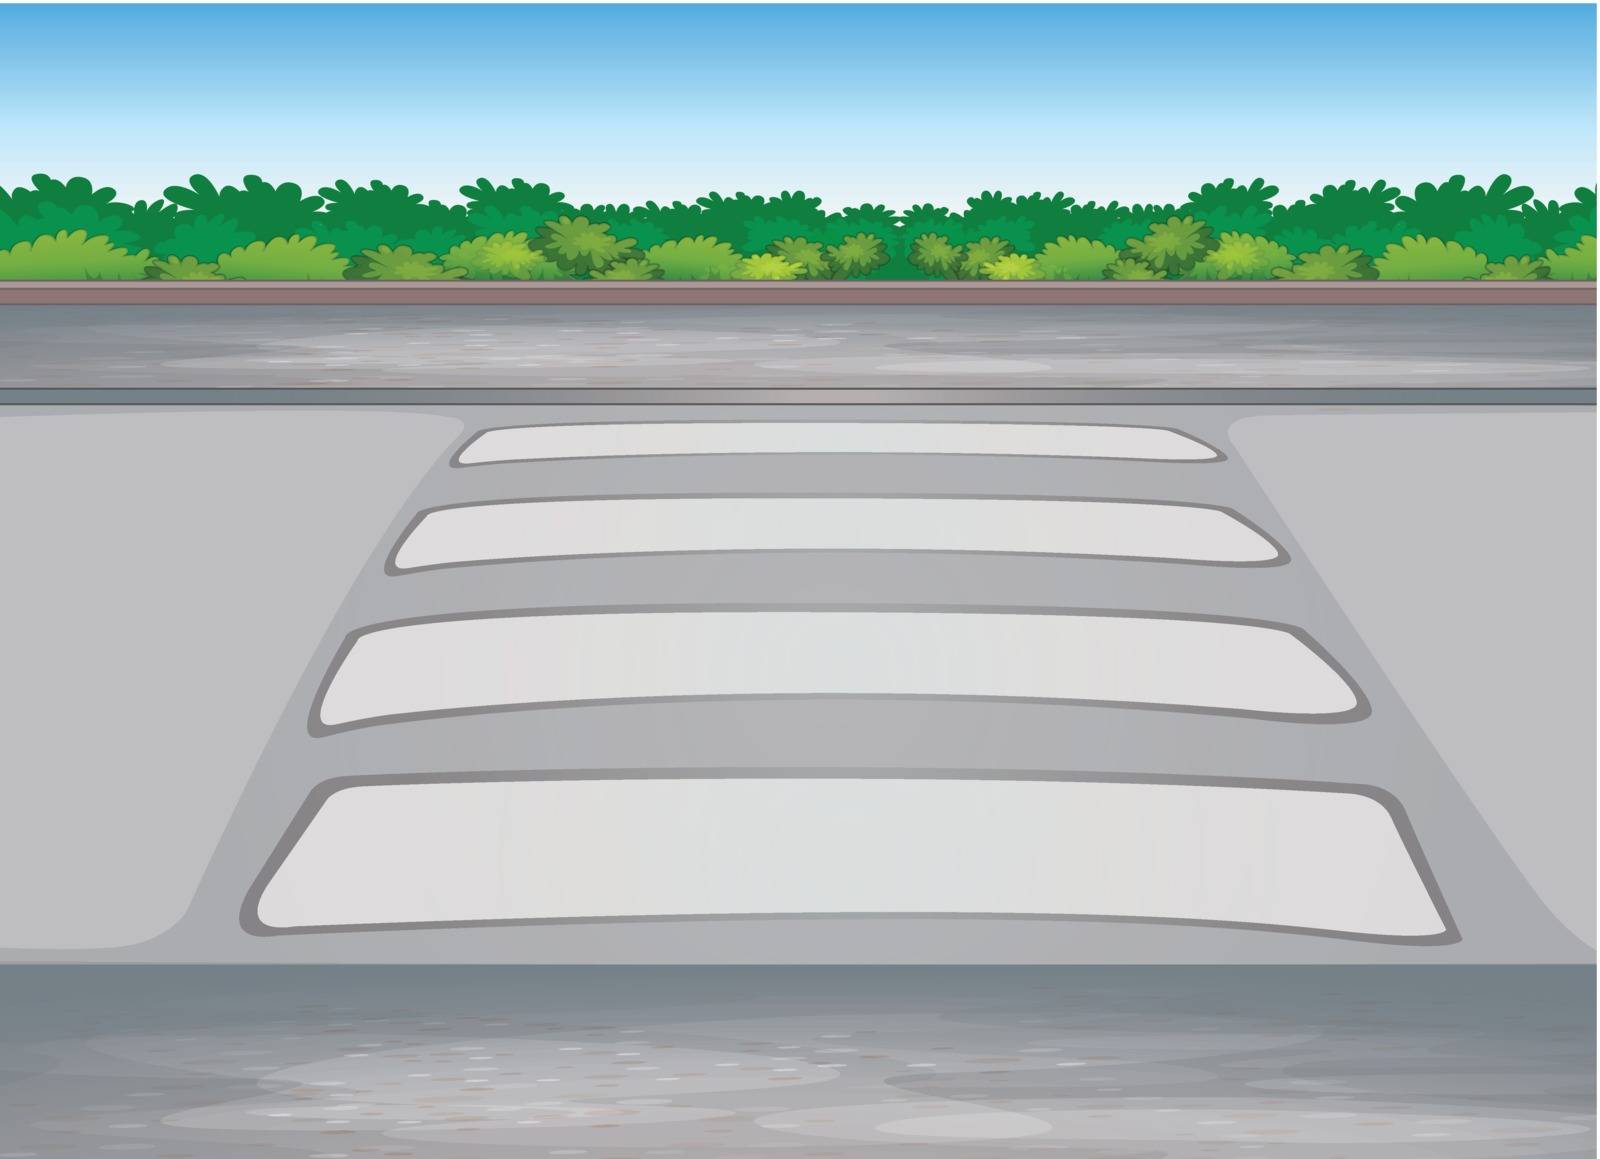 illustration of zebra crssing on a road